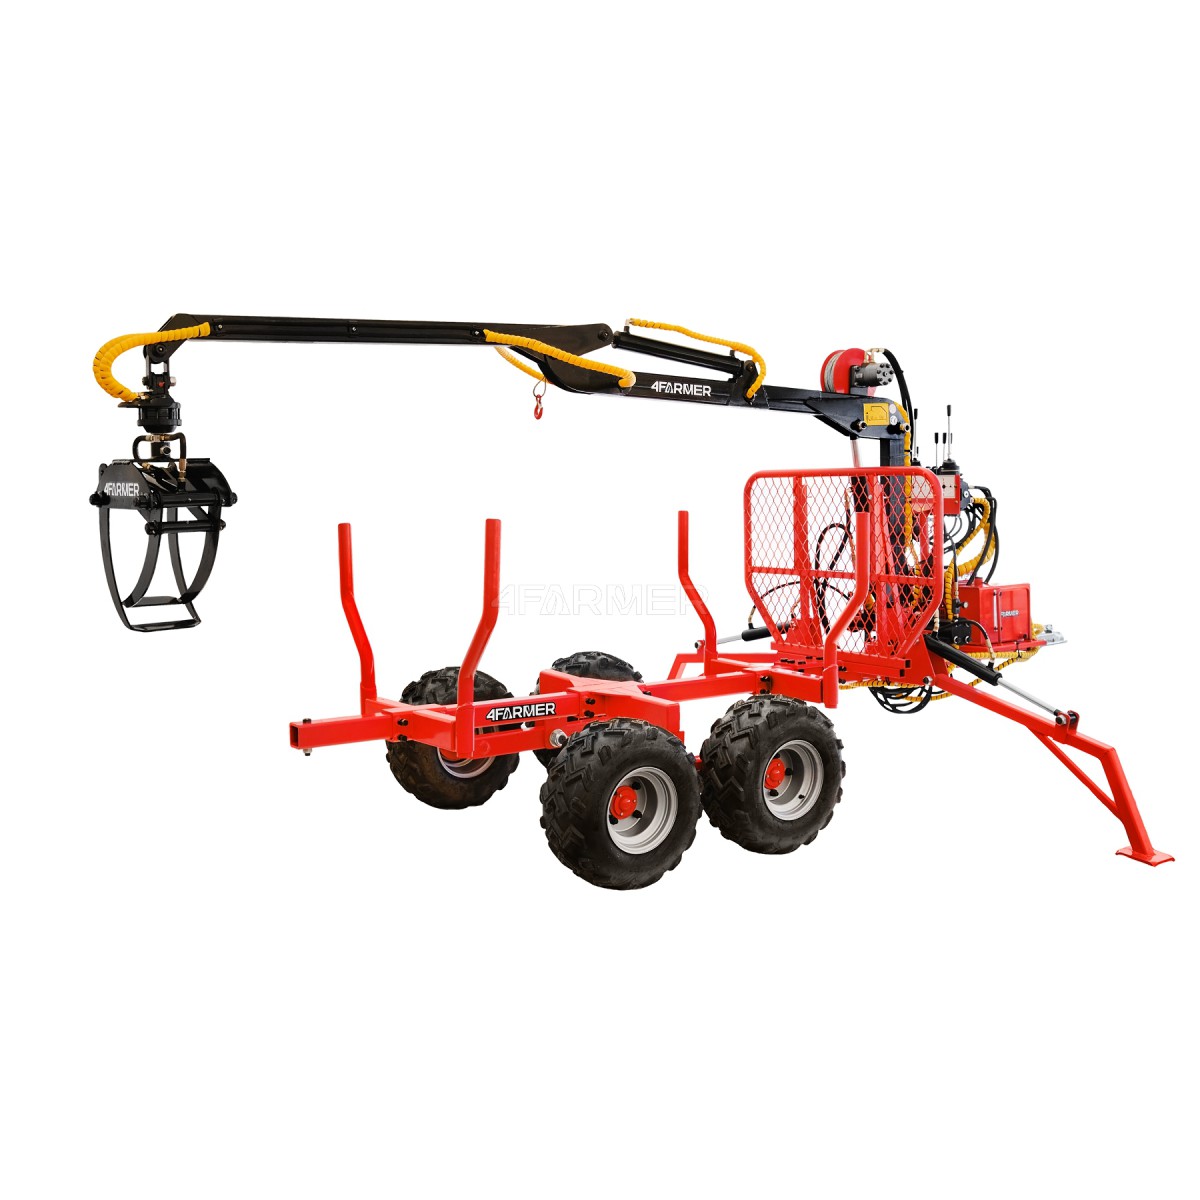 Forest crane ATV LT1500 + trailer loader HDS 1.5t / 300 kg